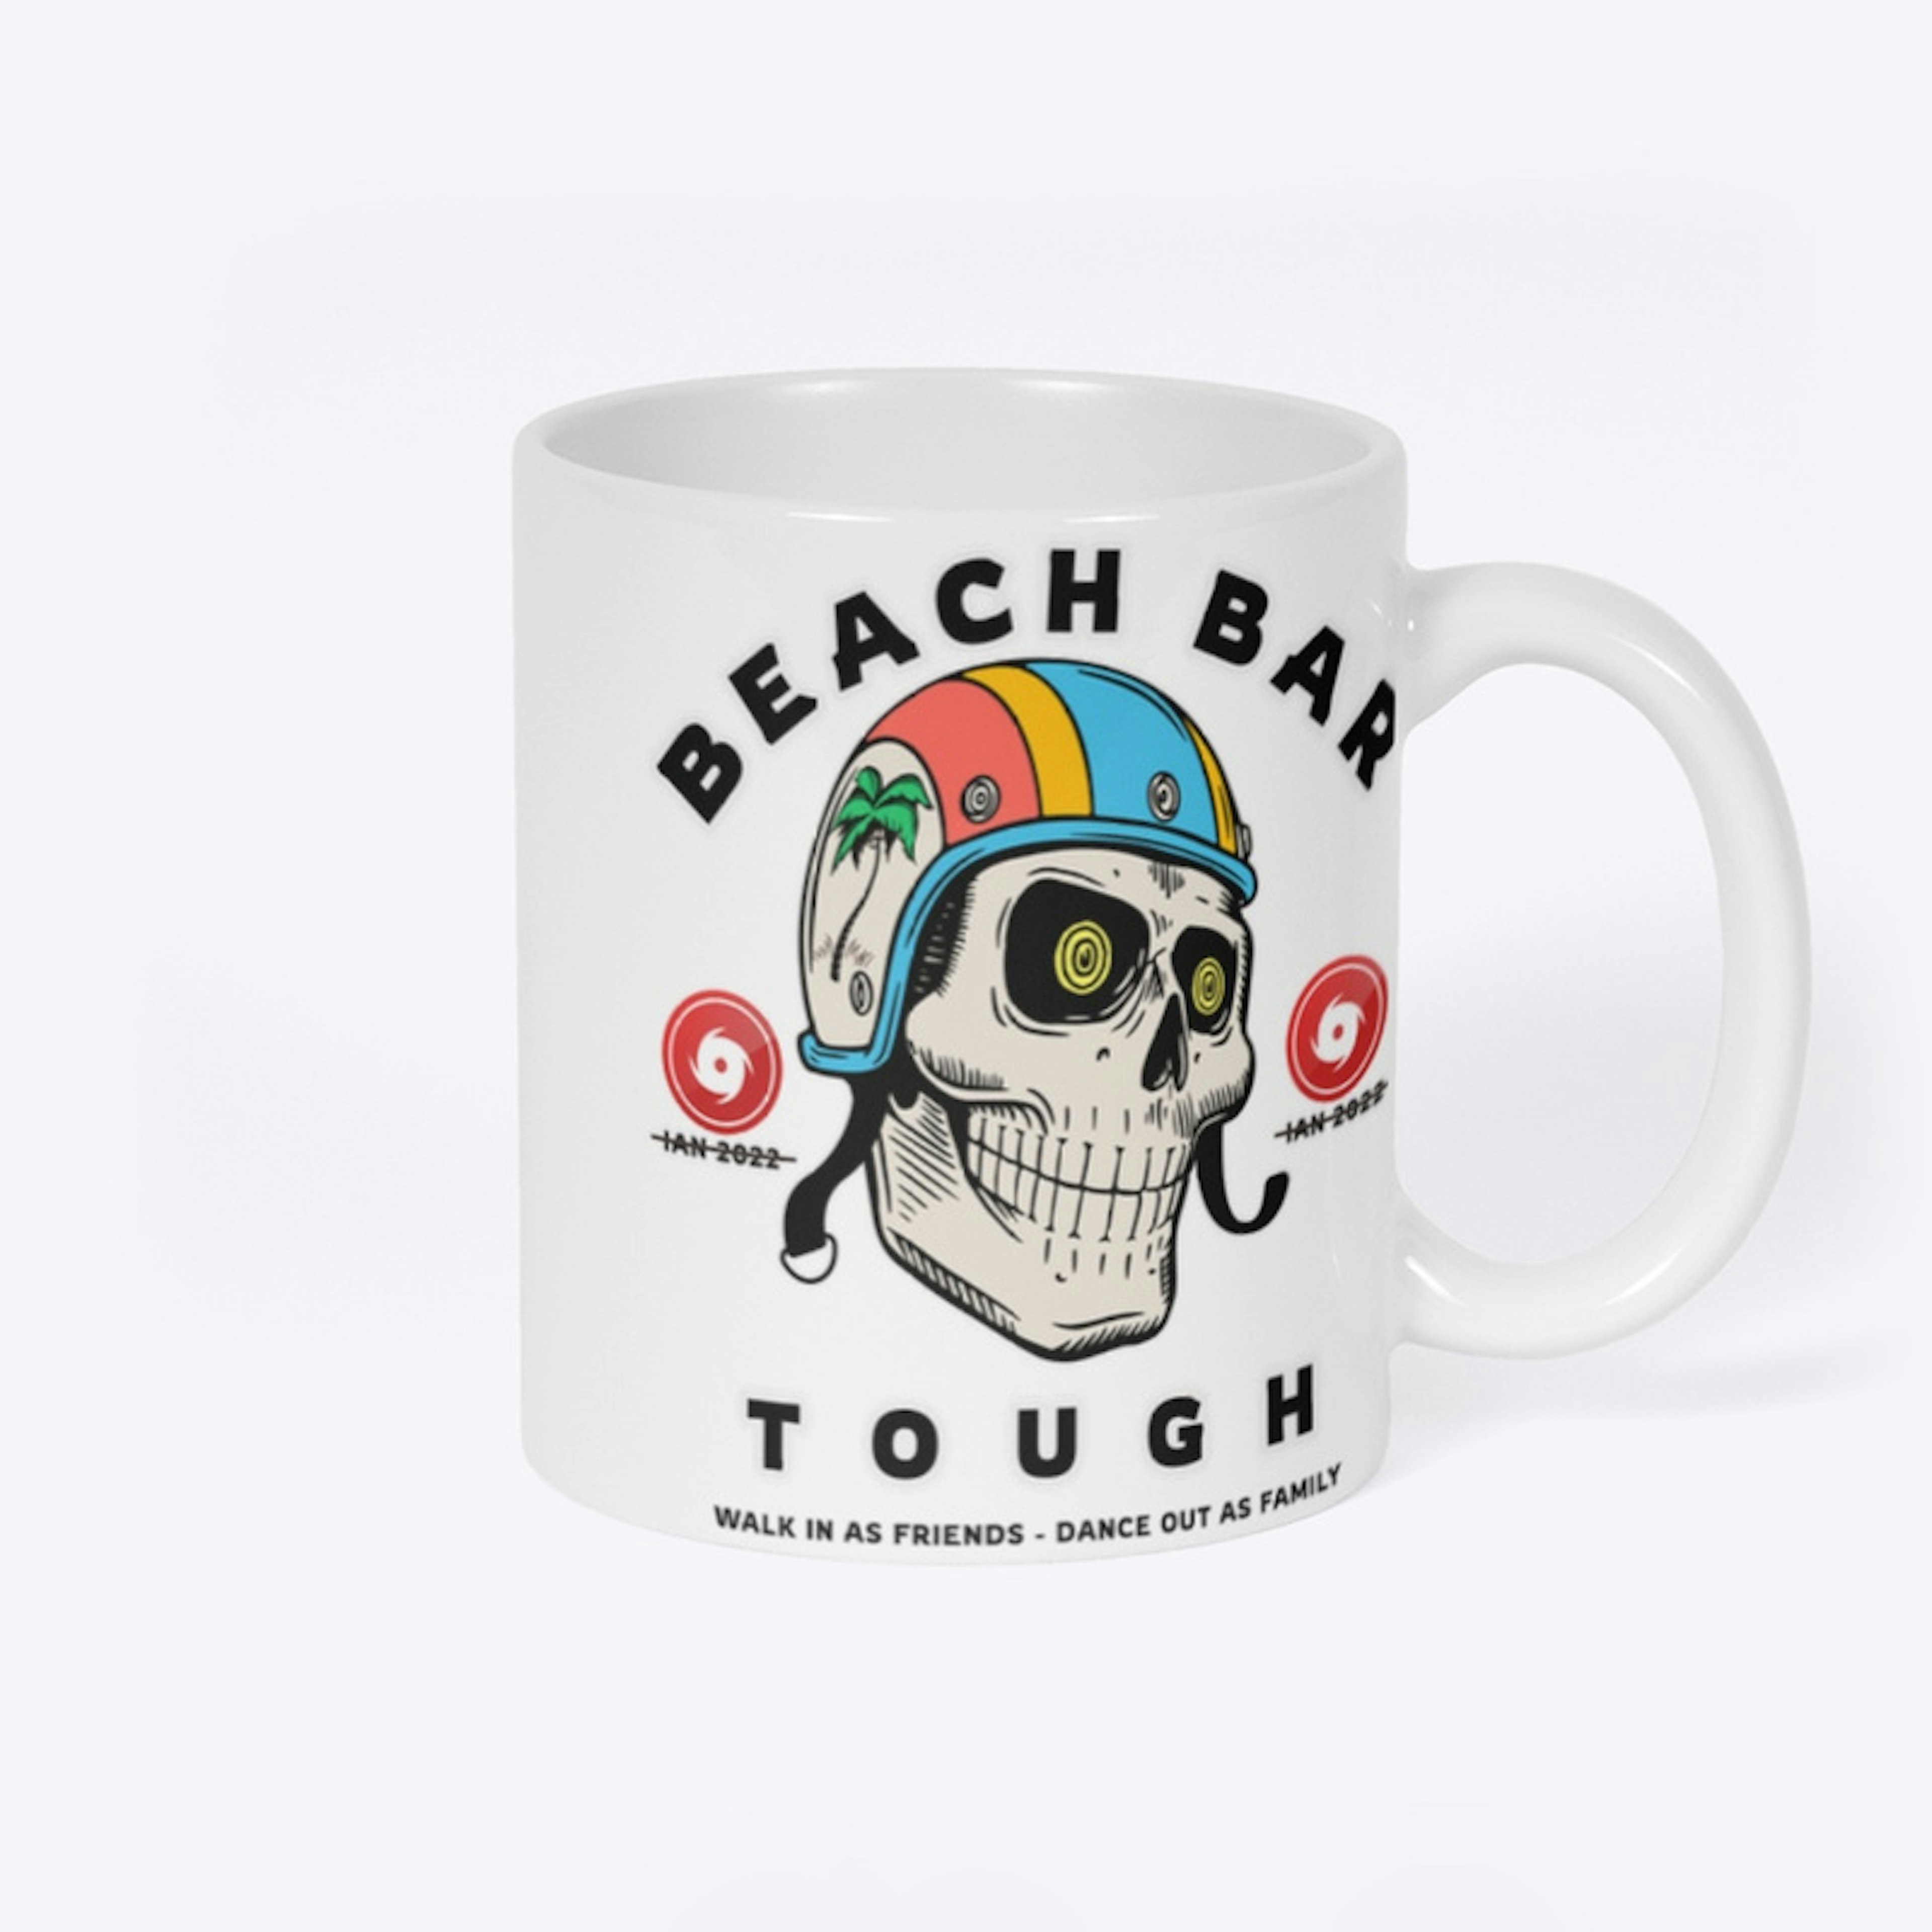 The Beach Bar Tough 